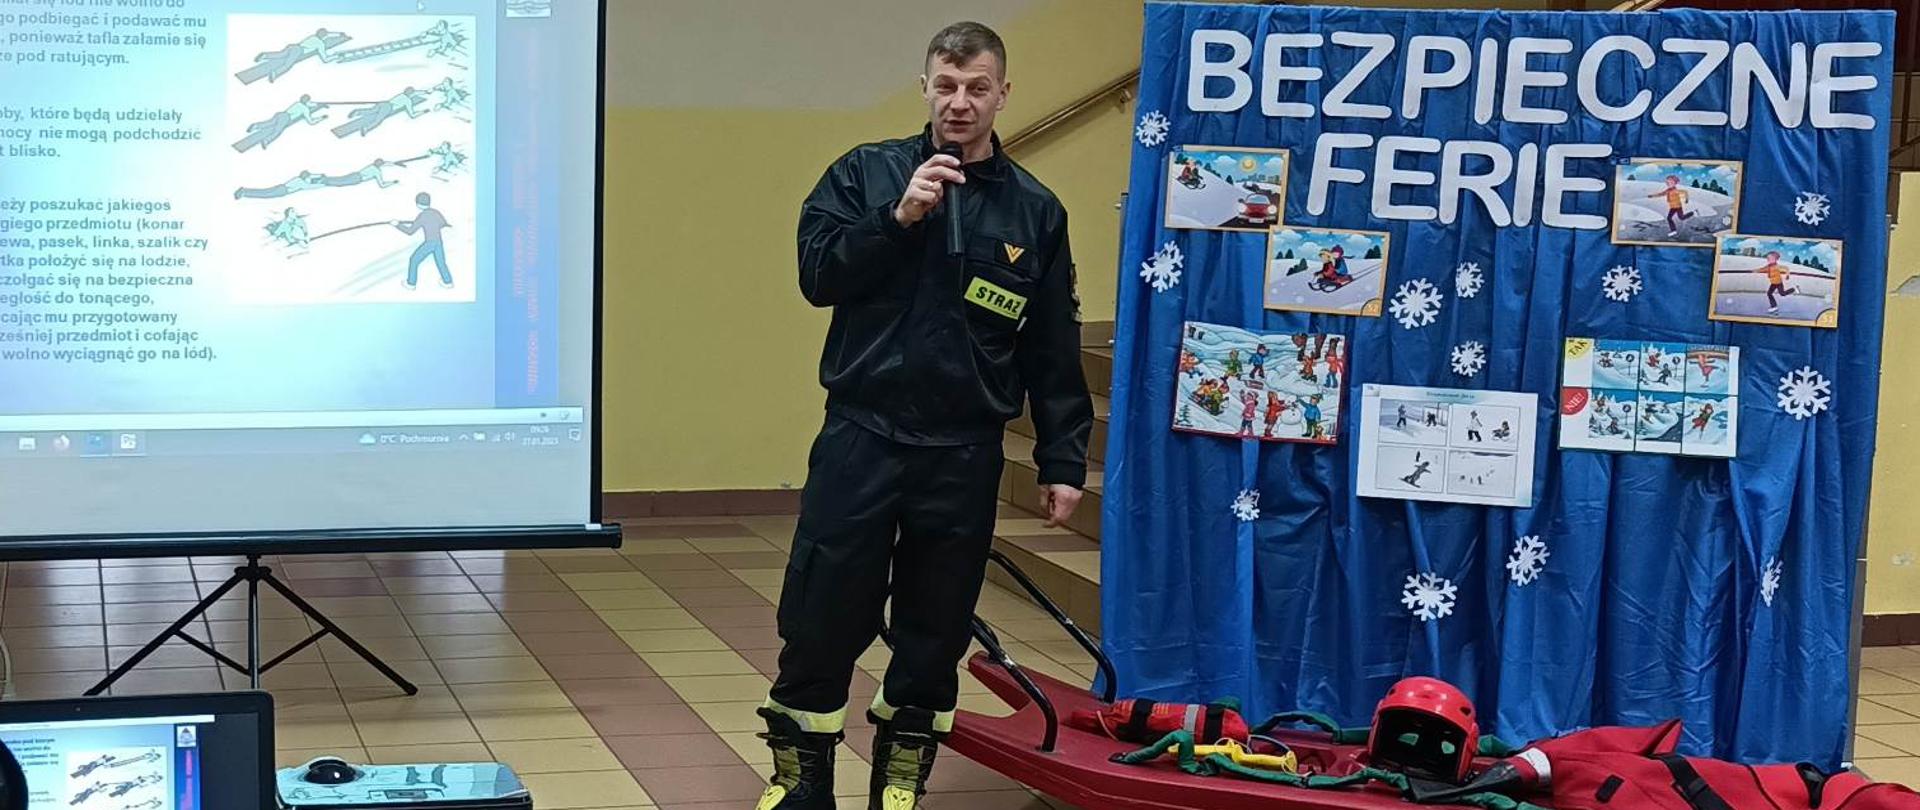 Dwóch strażaków w ramach akcji Bezpieczne Ferie na rzutniku przedstawia dzieciom, prezentację i sprzęt wykorzystywany podczas działań na lodzie.